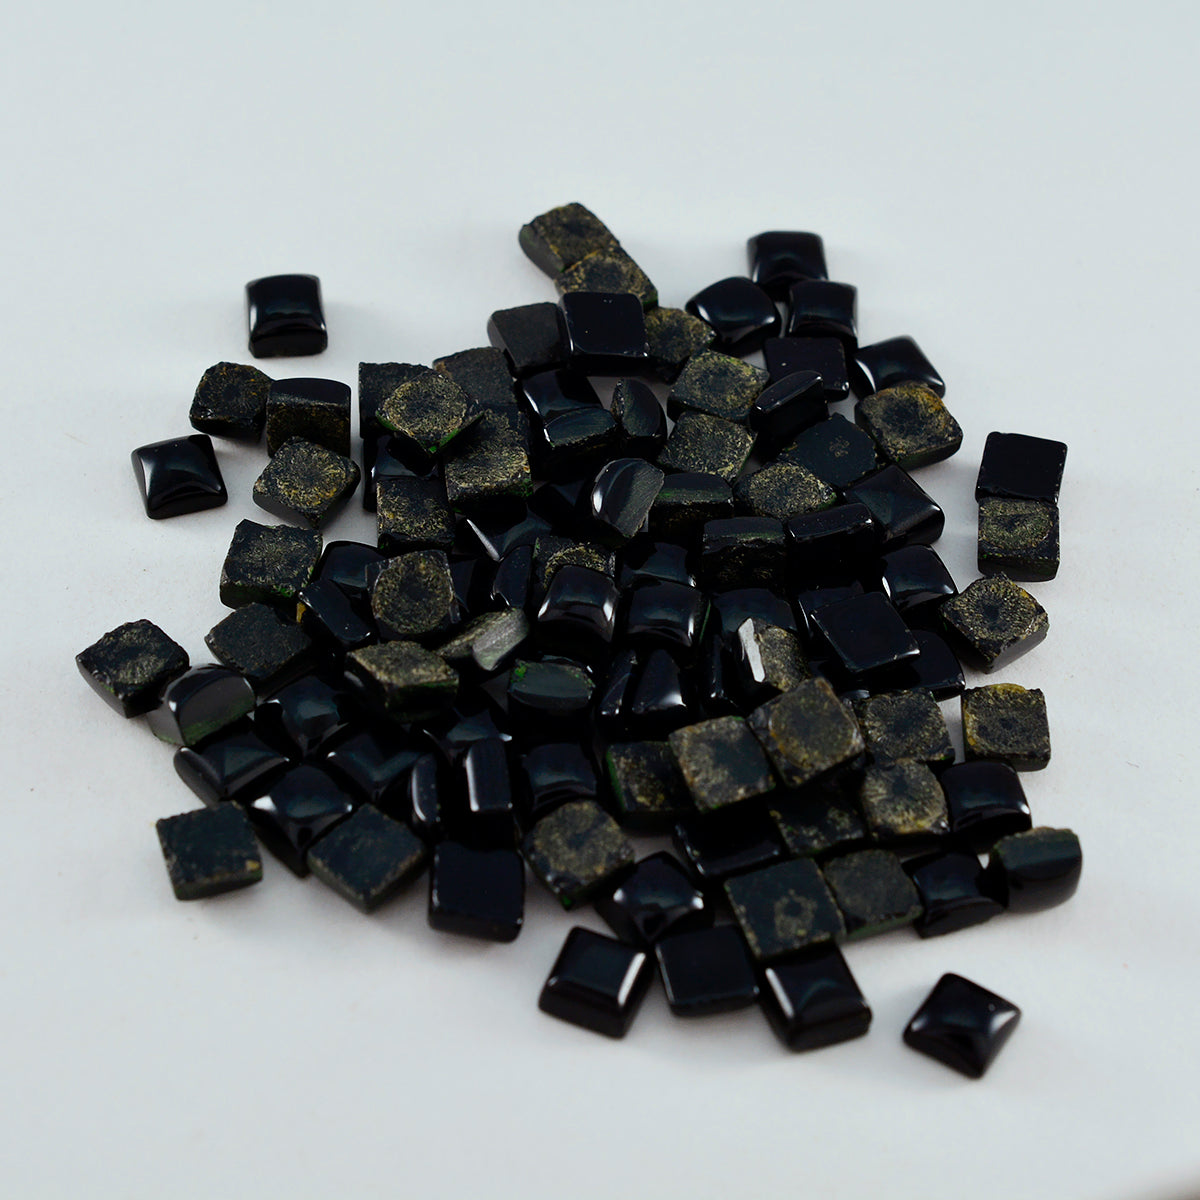 Riyogems 1 cabujón de ónix negro de 0.236 x 0.236 in, forma cuadrada, piedra preciosa de calidad preciosa